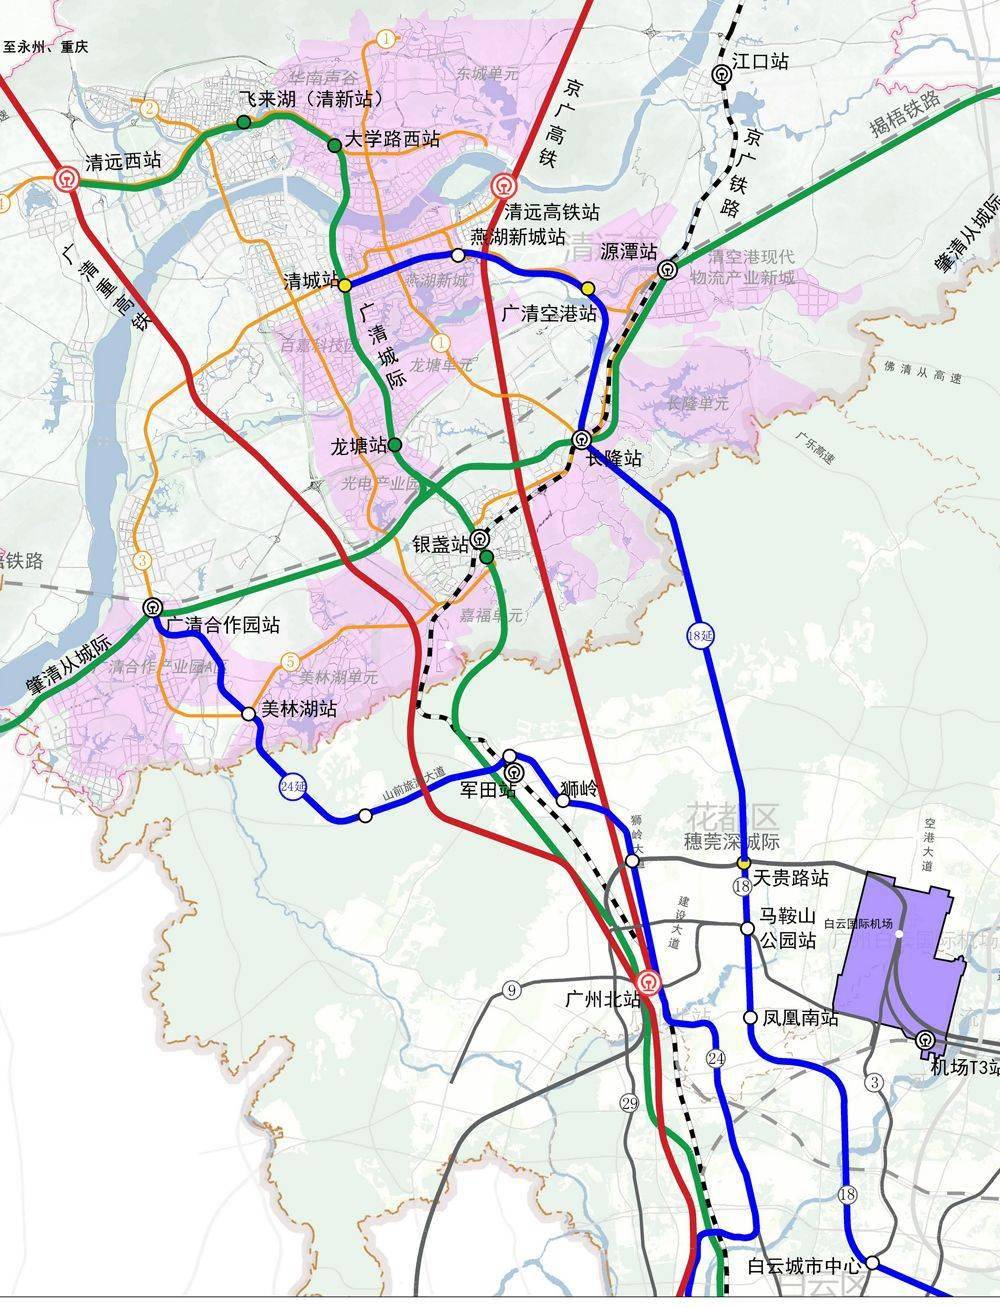 18号线北延段根据此次广清轨道交通衔接规划草案示意图,18号线延长线